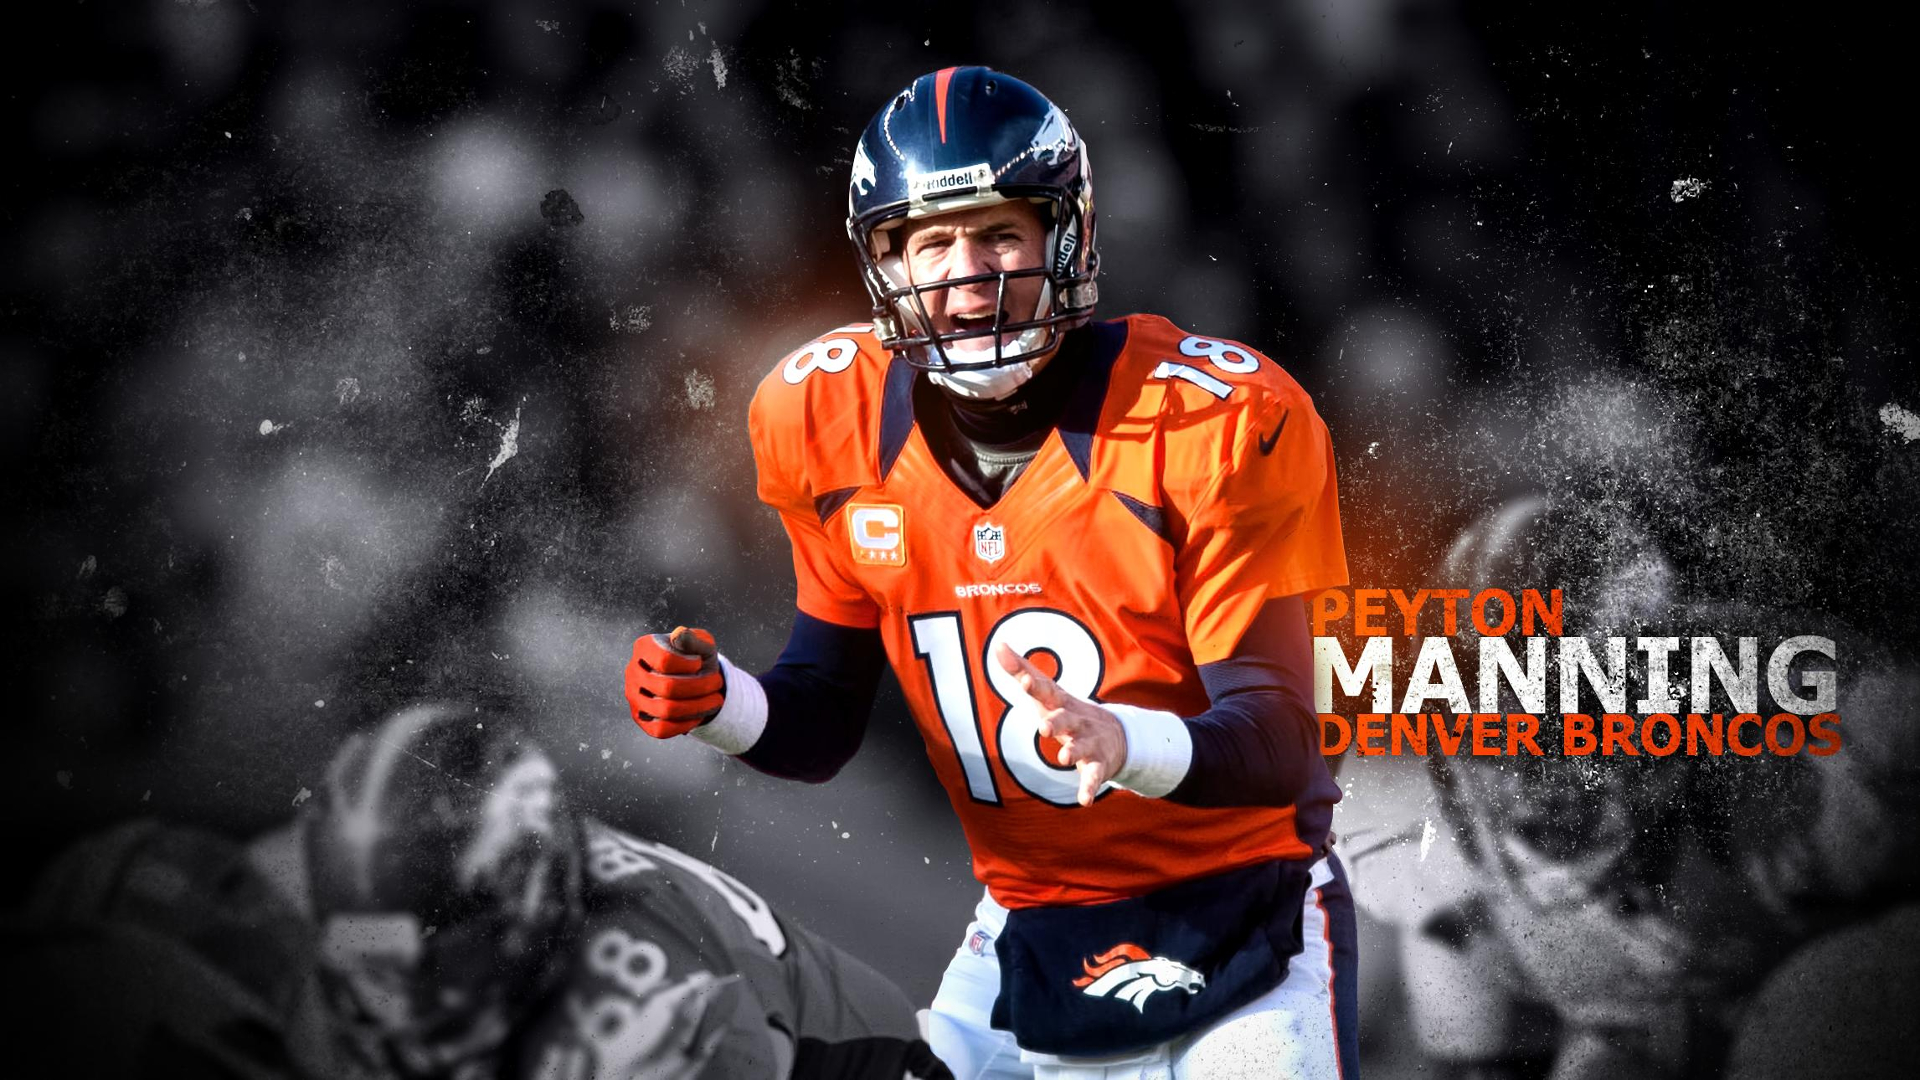 Baixar papéis de parede de desktop Peyton Manning HD